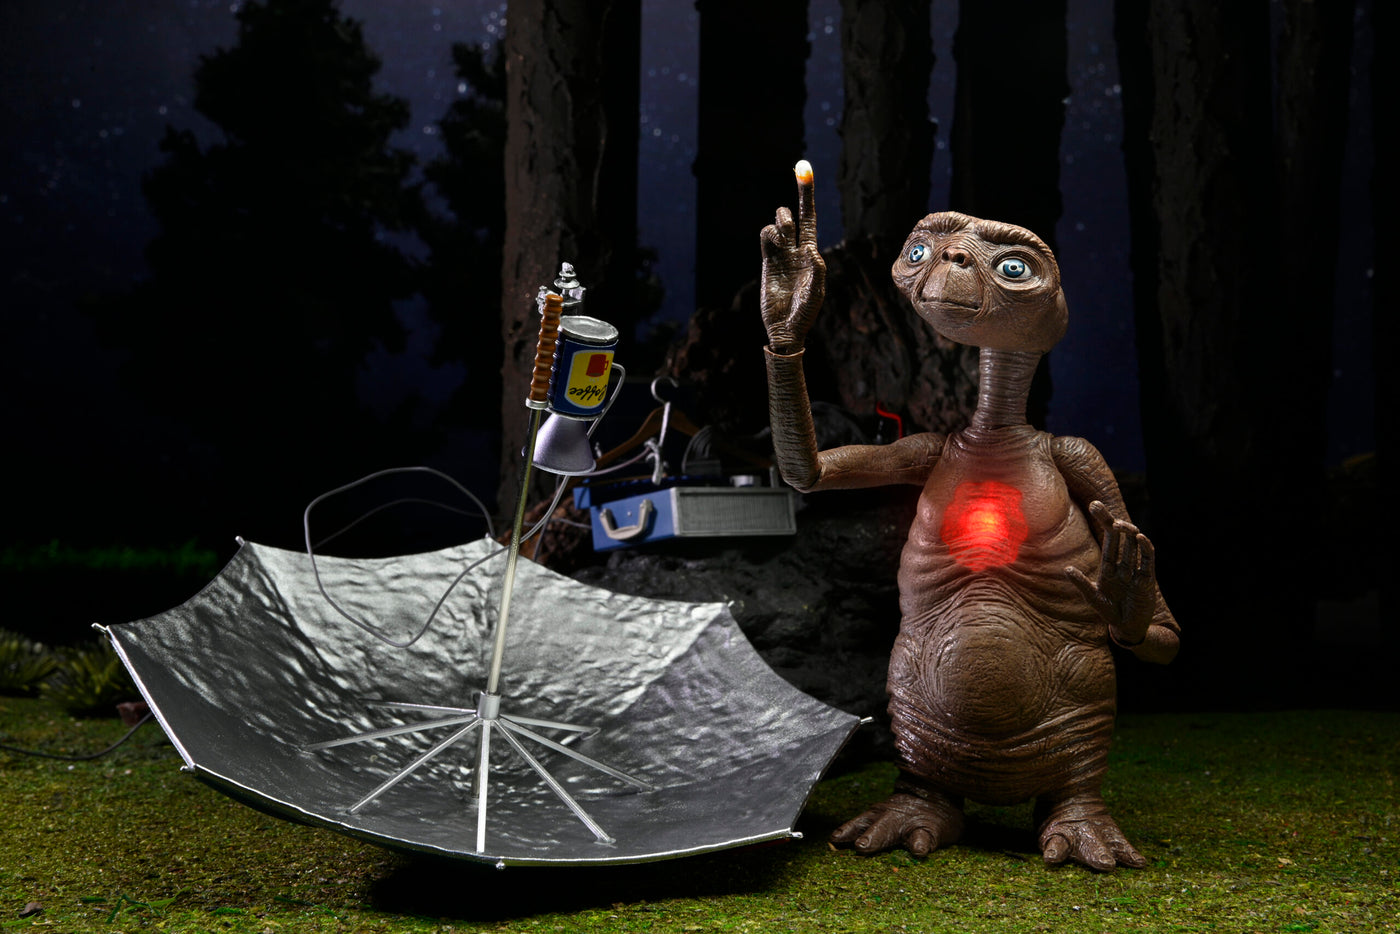 Neca E.T Deluxe Ultimate figure